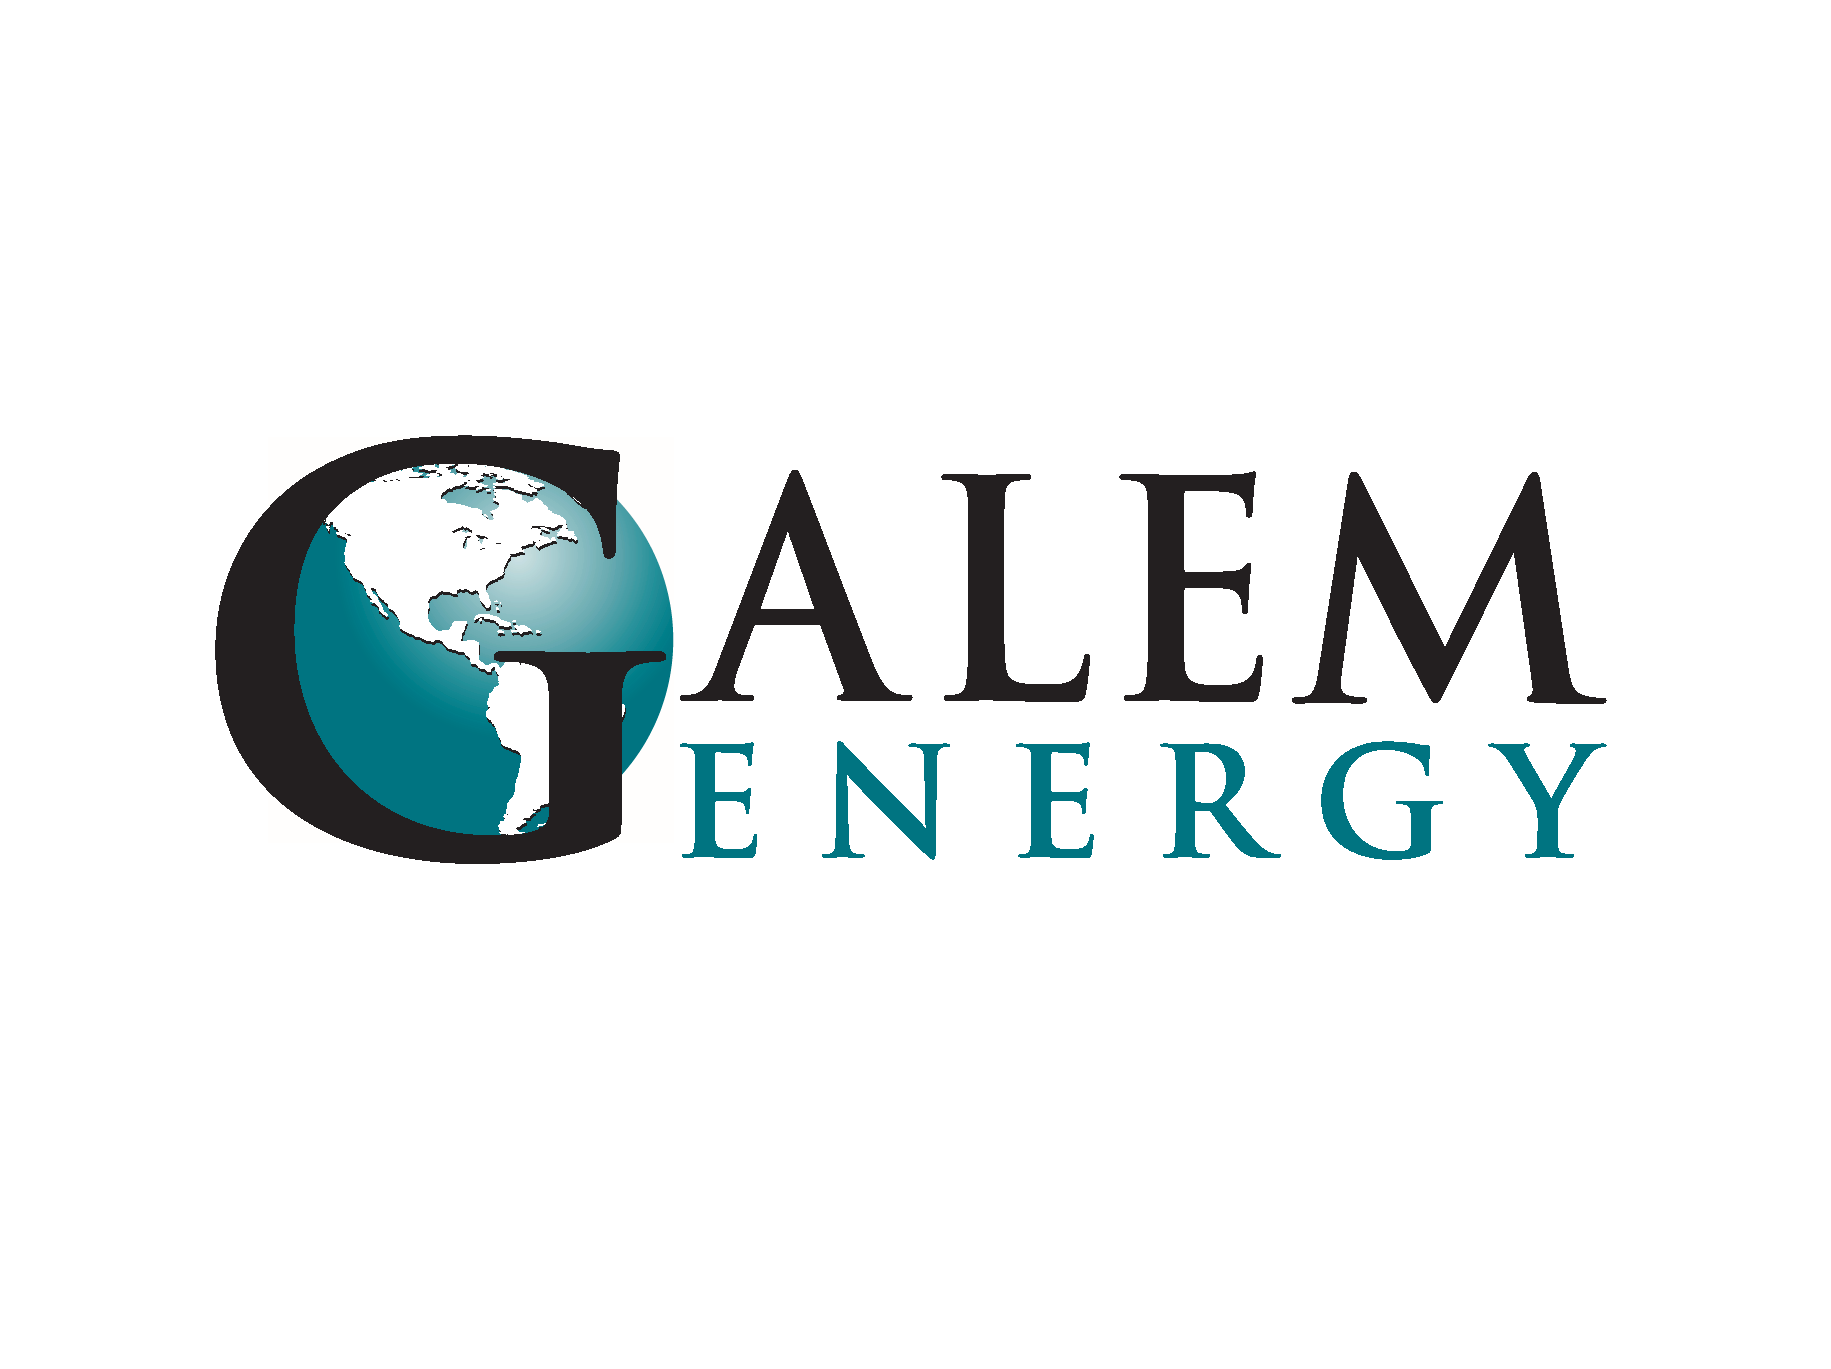 Galem Energy